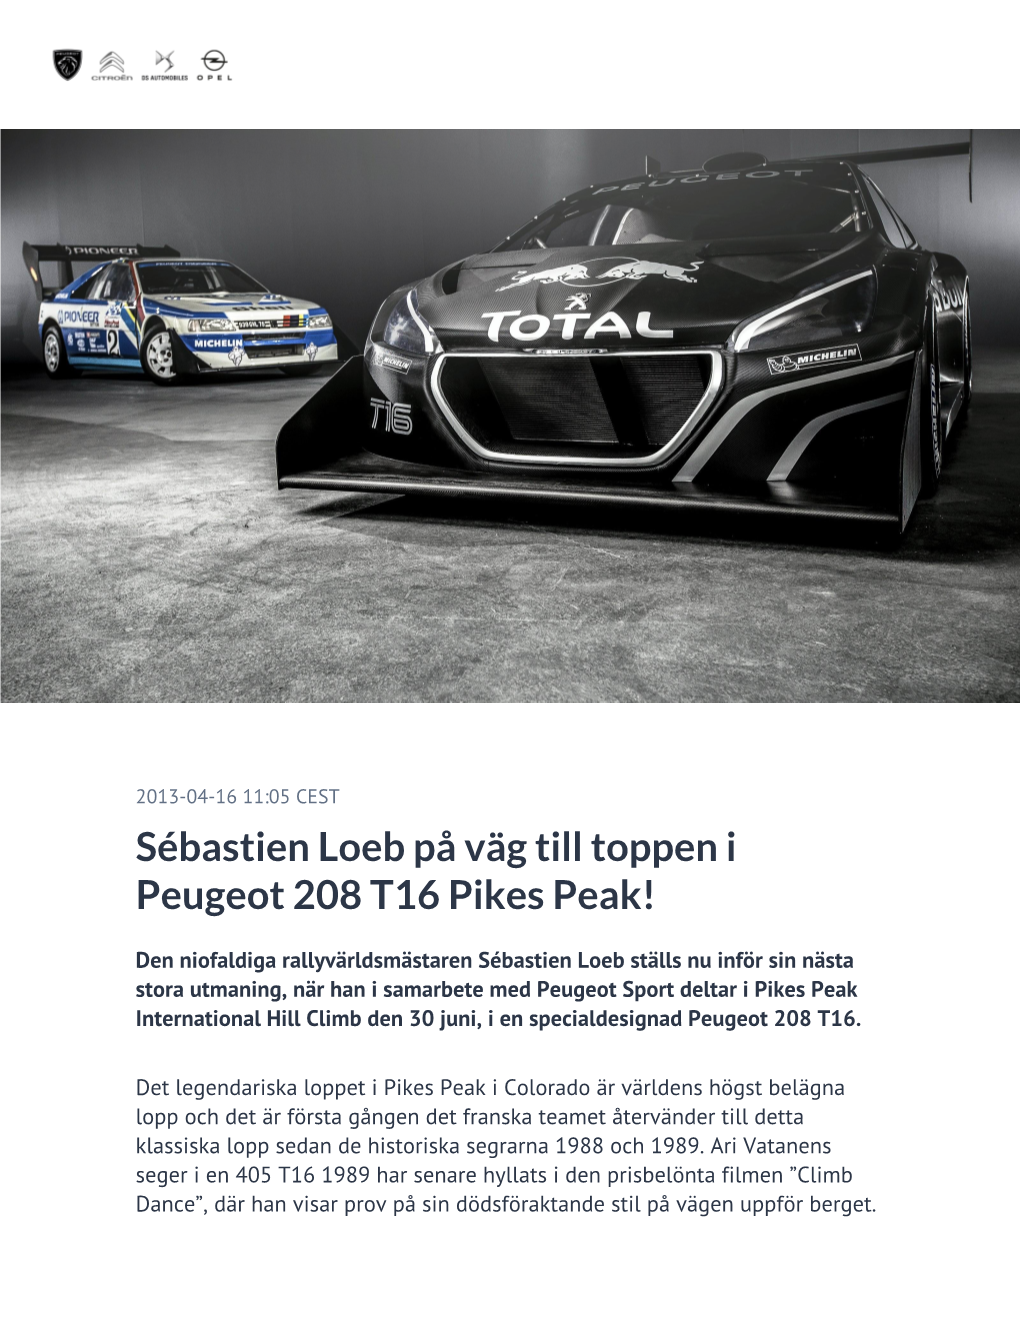 Sébastien Loeb På Väg Till Toppen I Peugeot 208 T16 Pikes Peak!